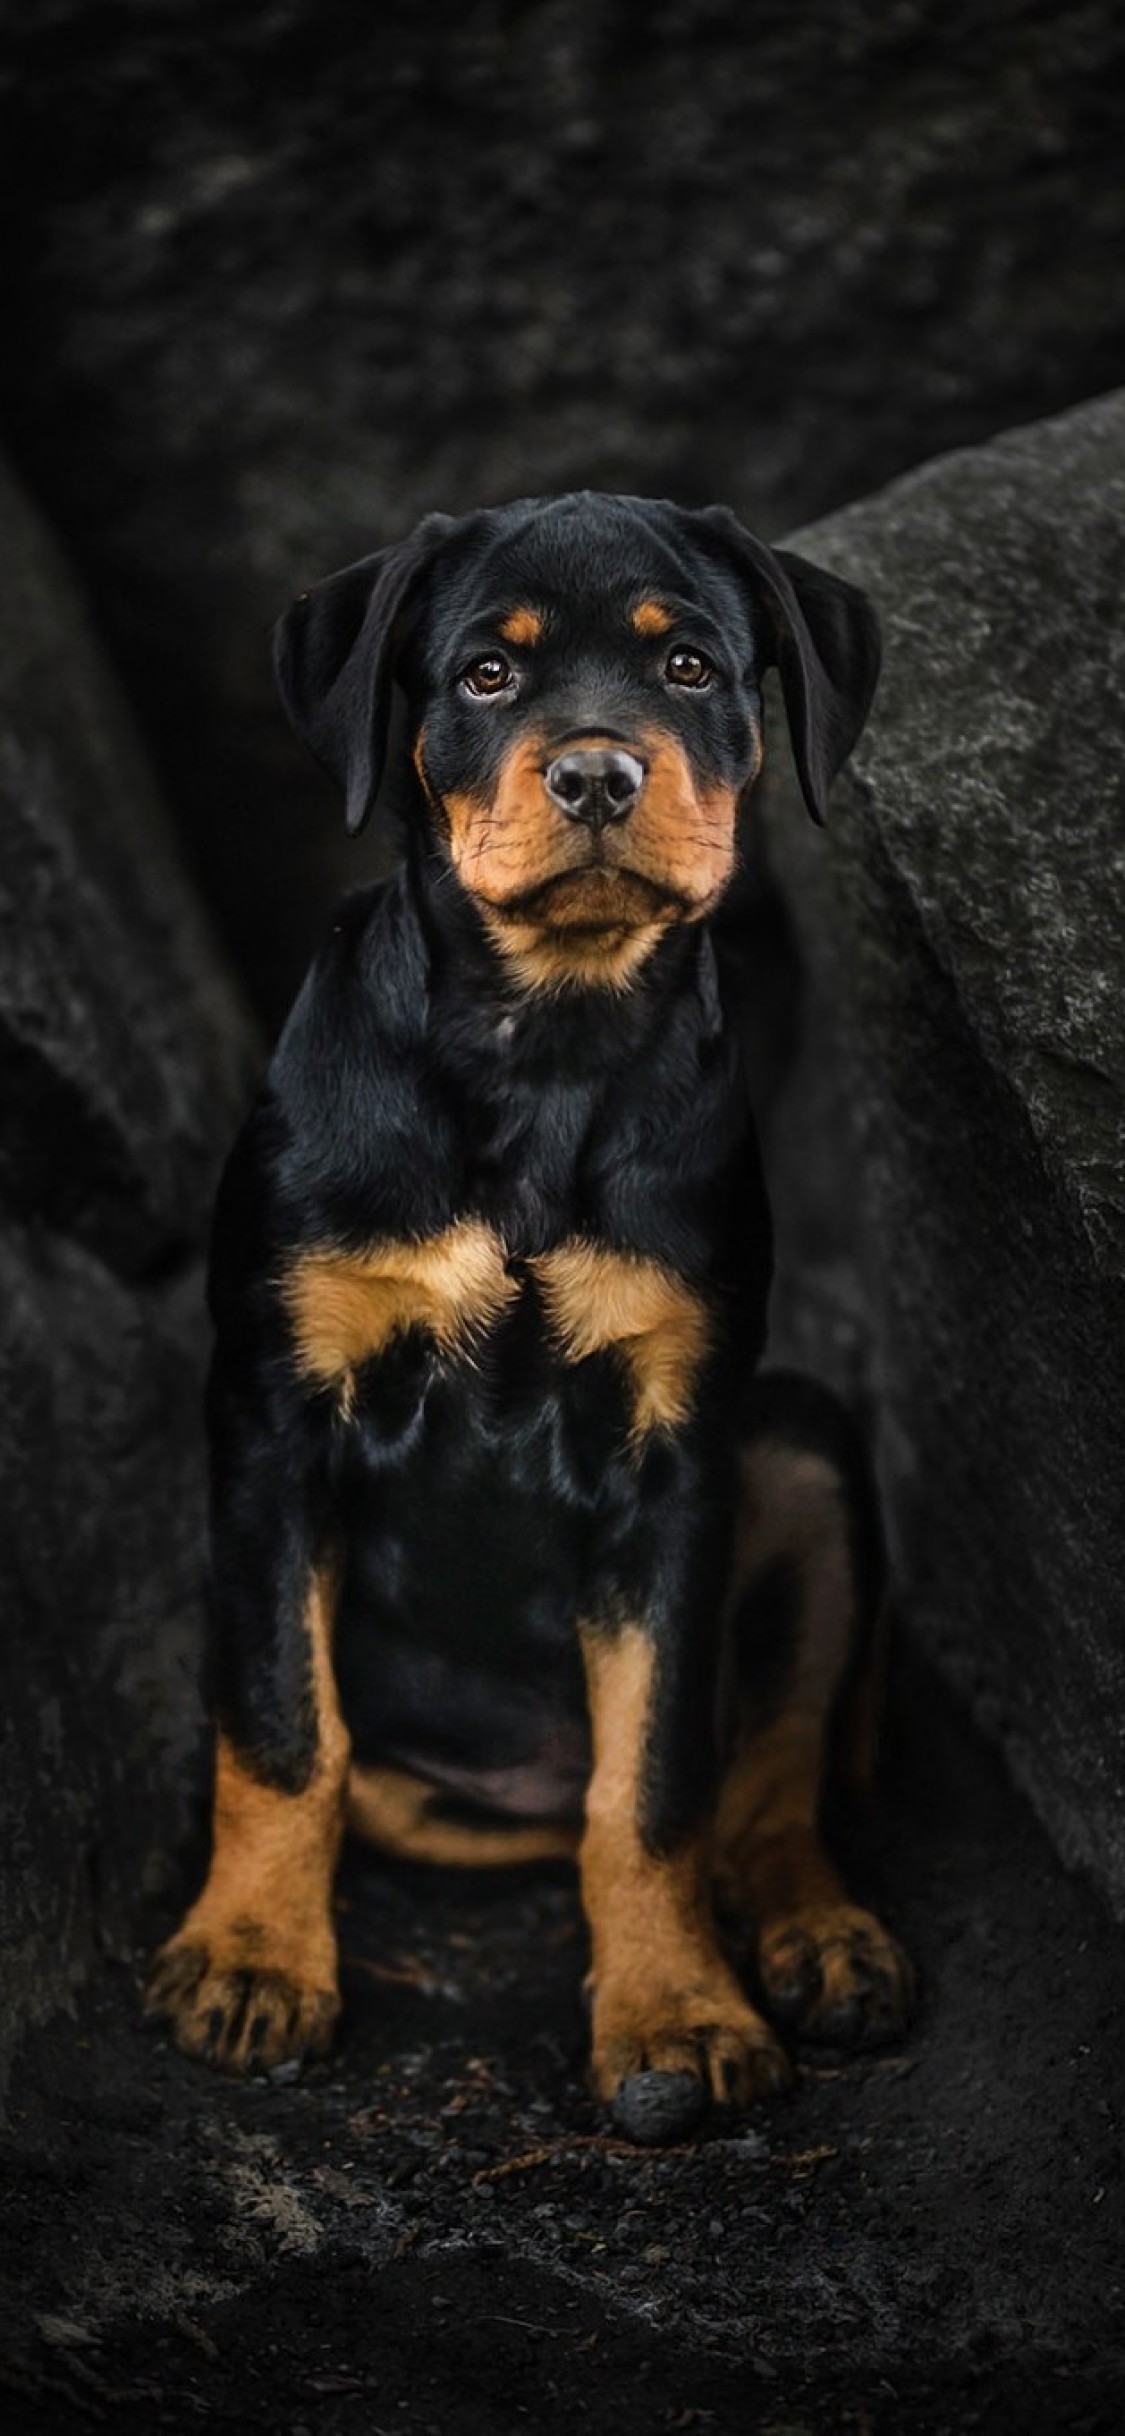 ロットワイラー犬のhdの壁紙,犬,ロットワイラー,働く犬,子犬,オーストリアの黒と黄褐色の猟犬